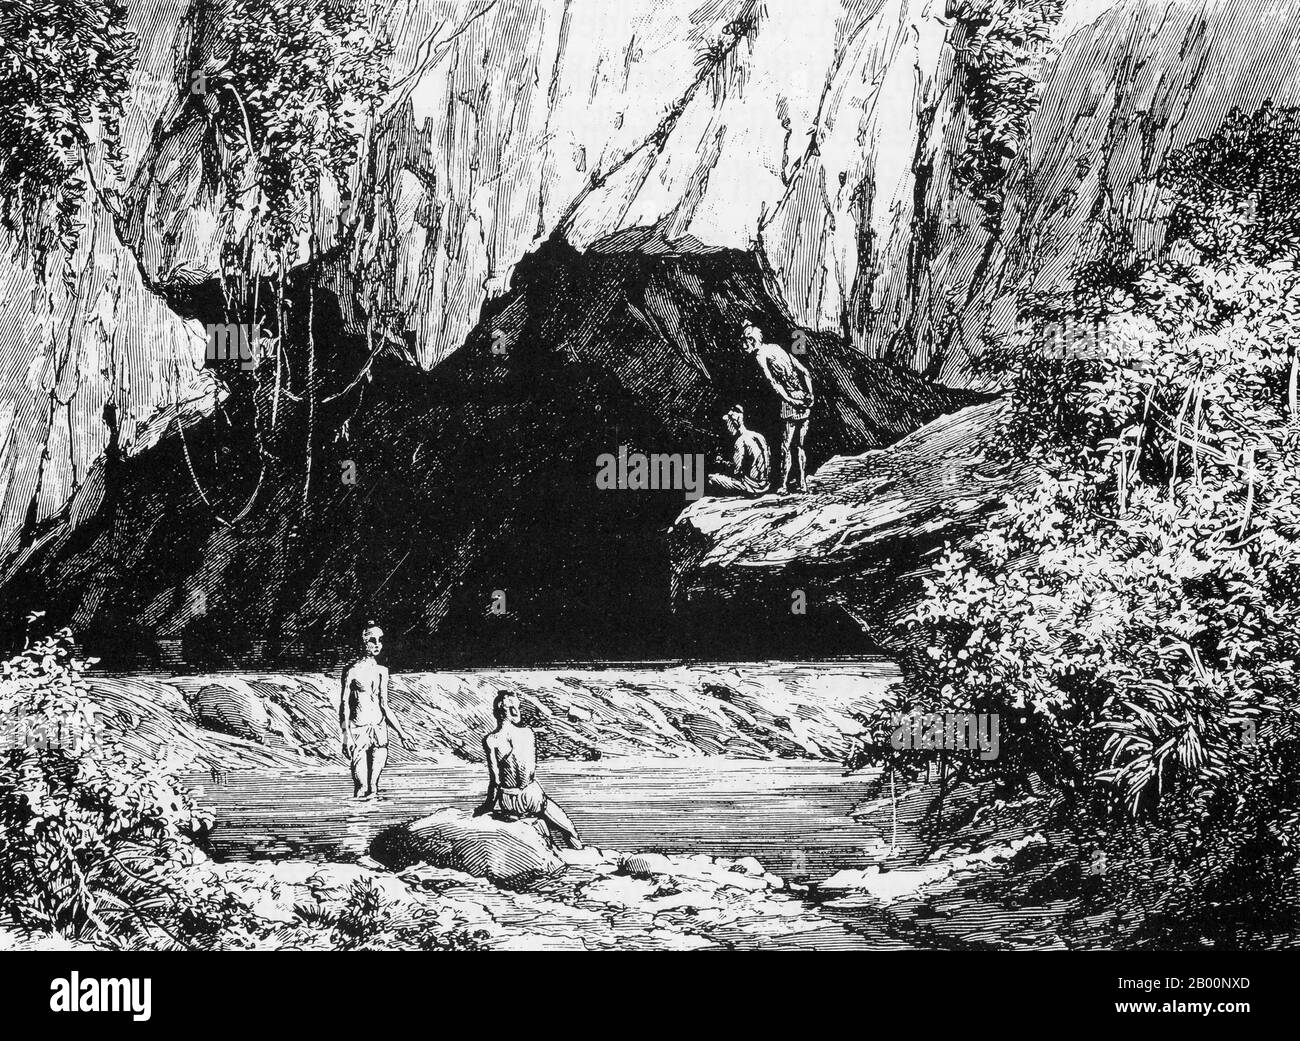 Laos: Die Tam Krung Höhle. Gravur von einem unbekannten Künstler, c. 1882-1884. Dr. Paul Neis unternahm im Auftrag des französischen Bildungsministers eine wissenschaftliche Mission nach Cochinchina und Laos. Über Chiang Mai und Nord-Thailand kehrte er nach Bangkok zurück. Seine Mission dauerte 19 Monate zwischen 1882 und 1884. Stockfoto